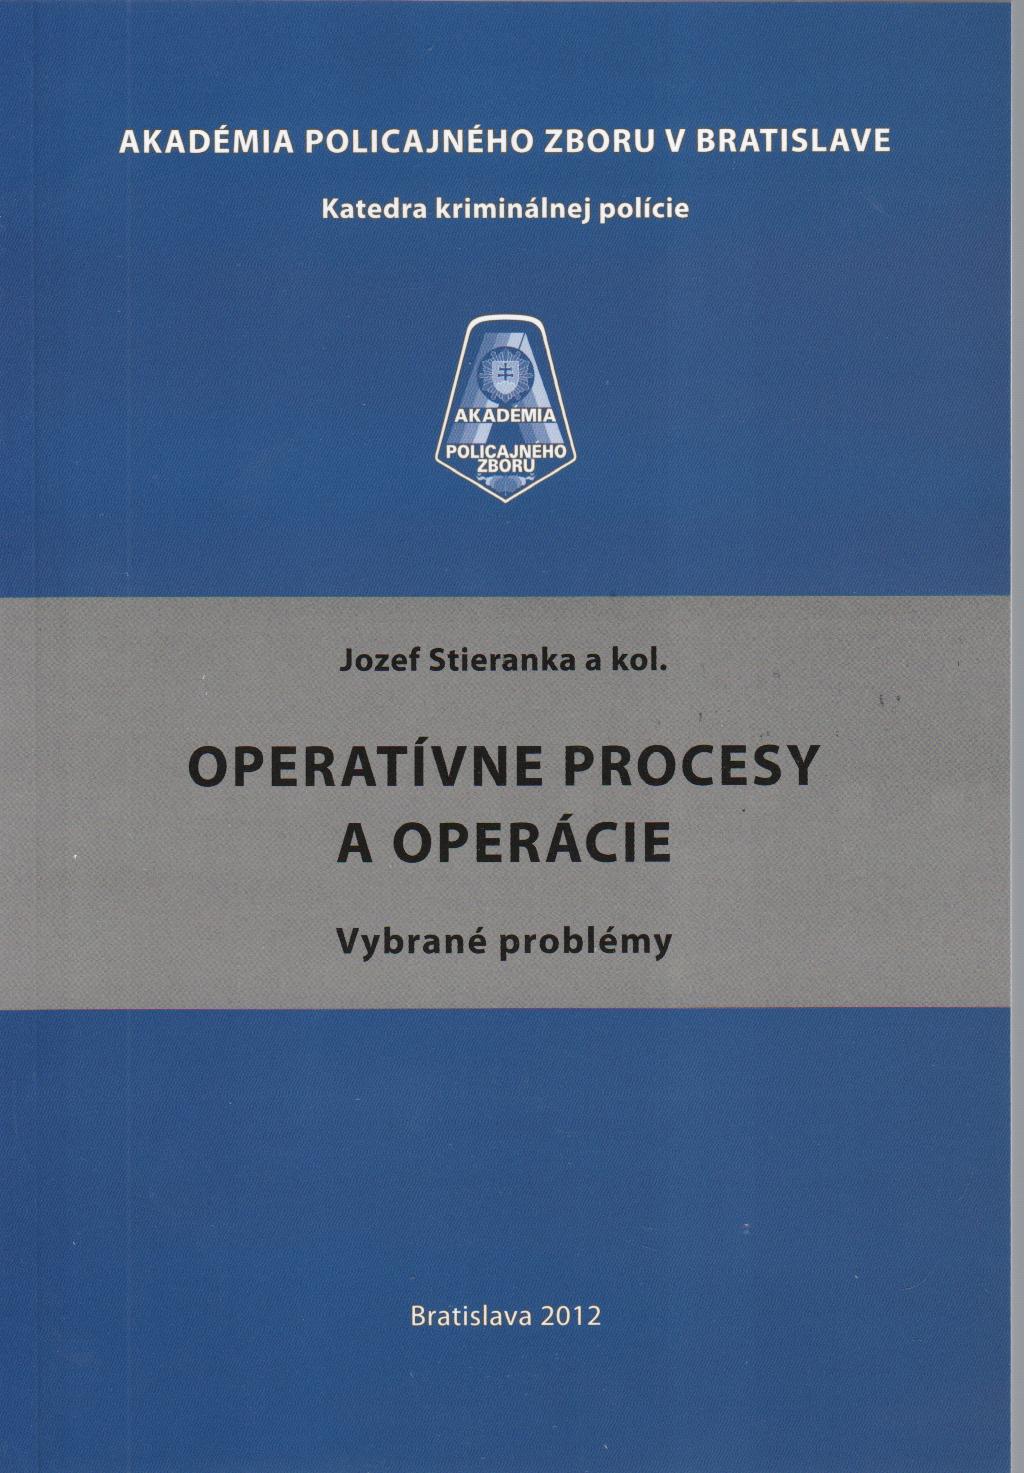 Operatívne procesy a operácie